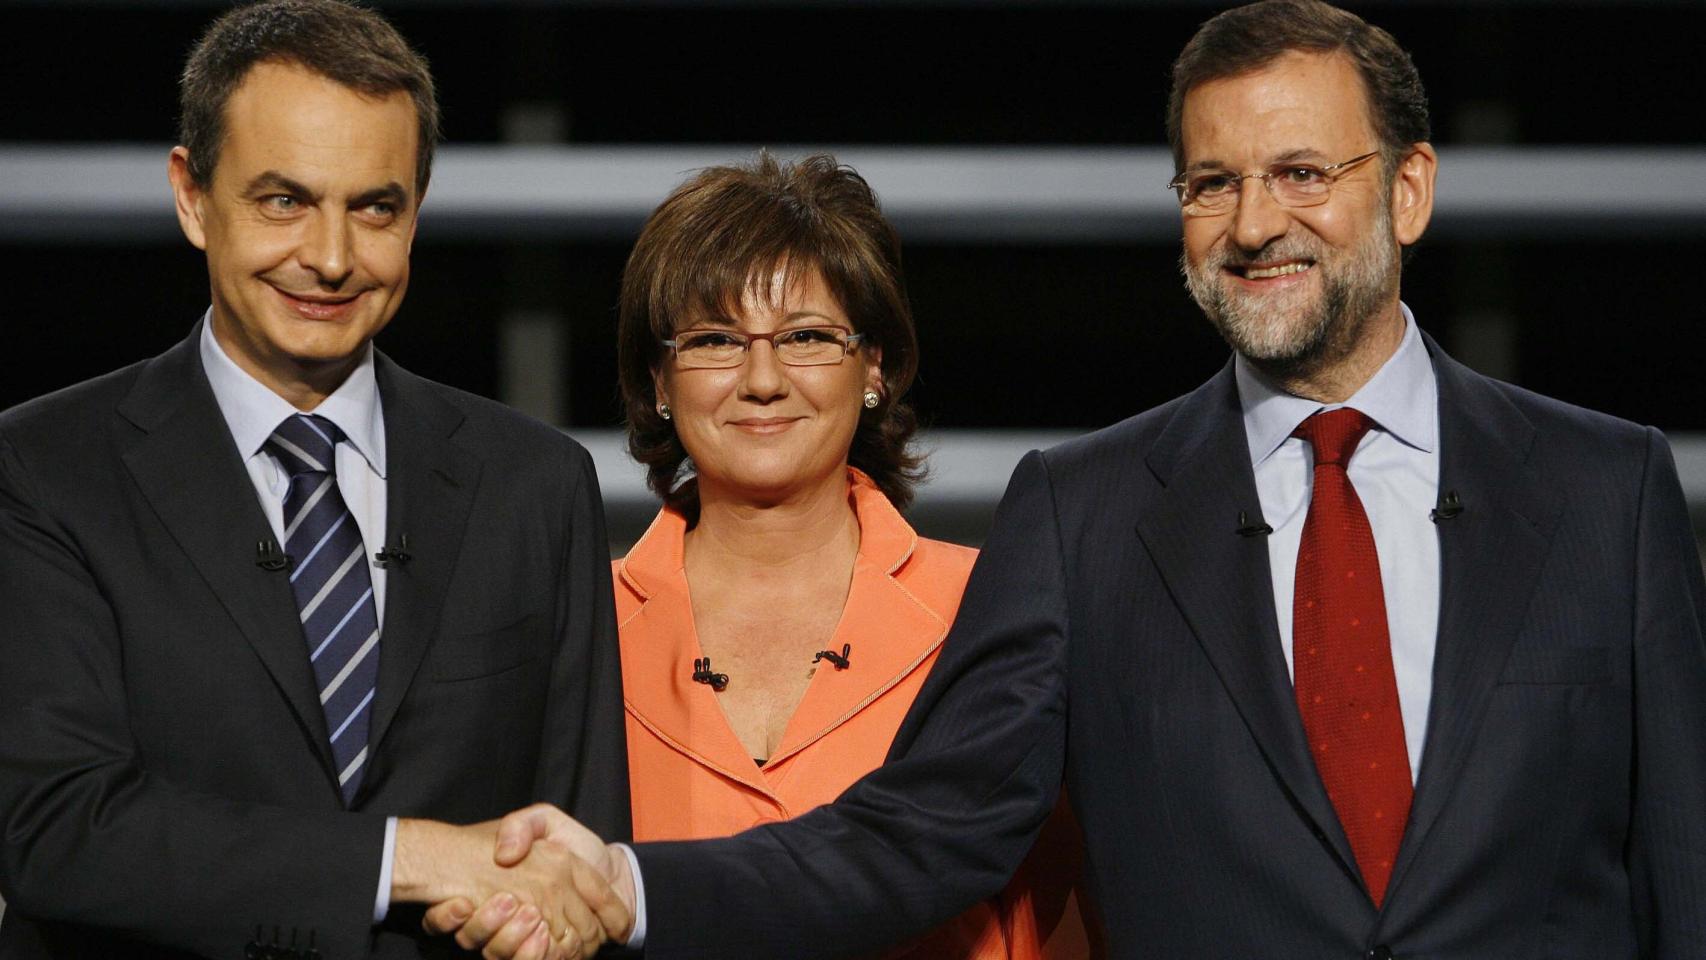 Histórico de audiencias de los debates políticos celebrados en España